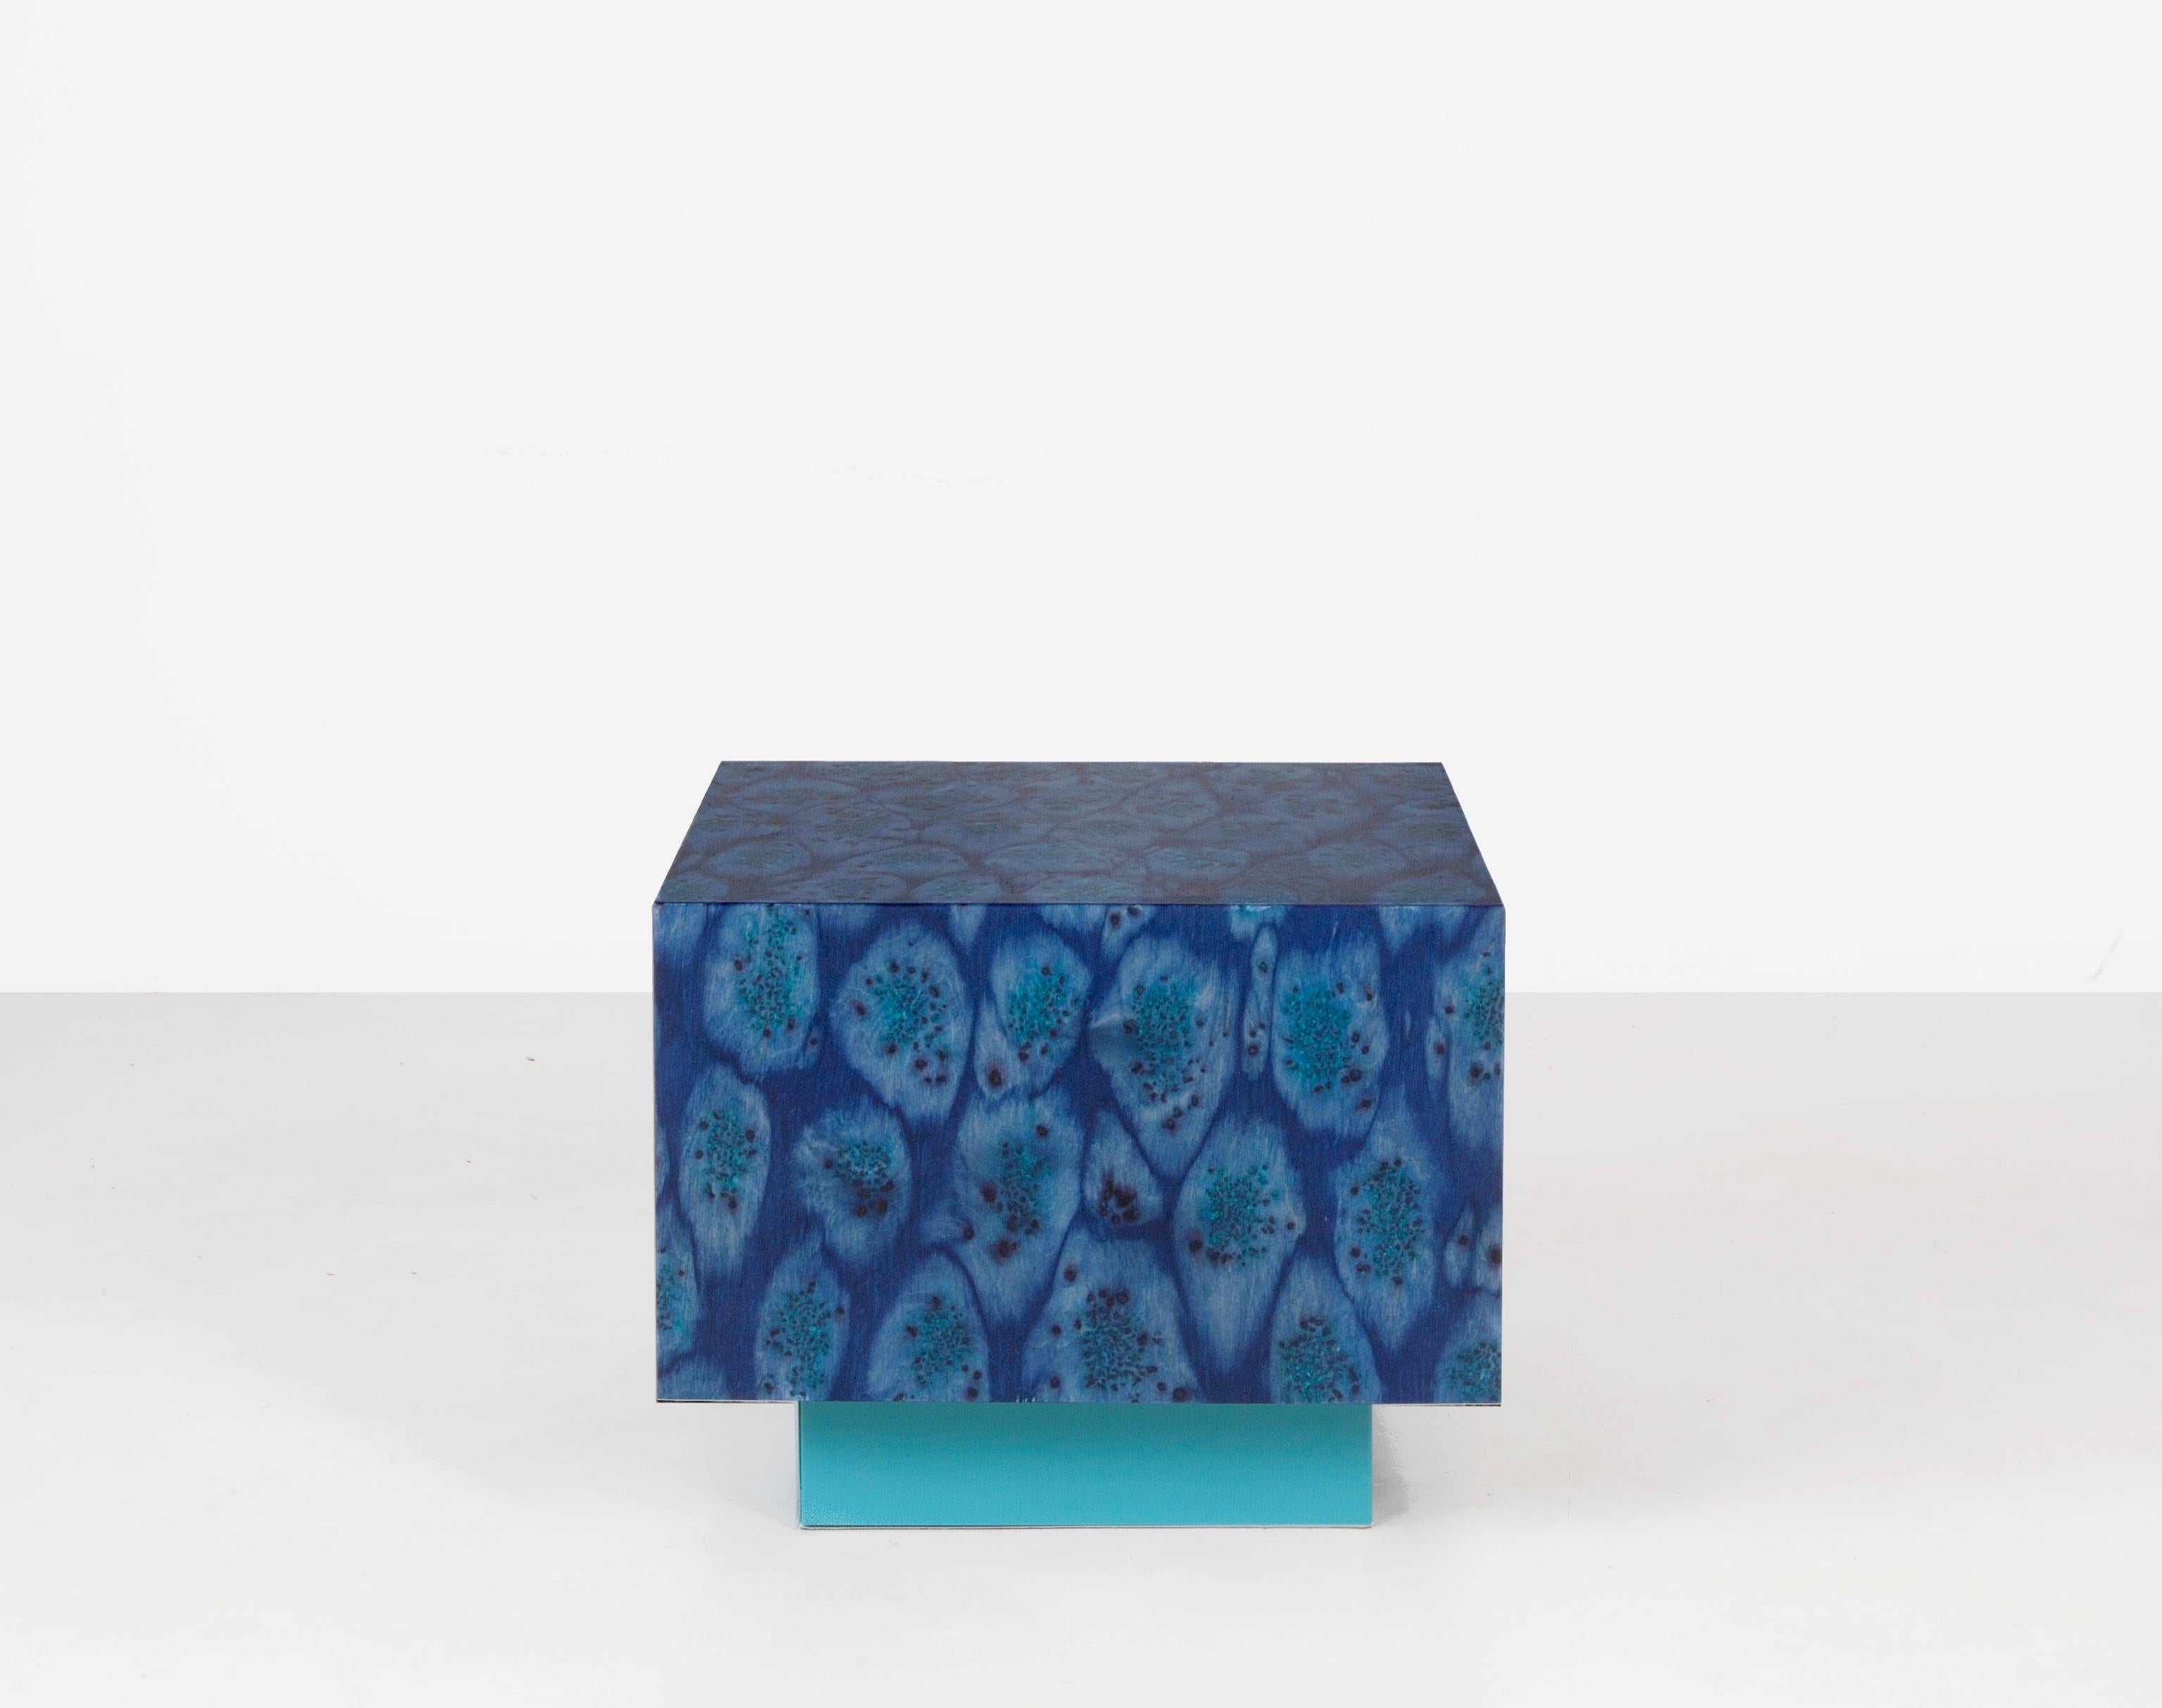 Ce cube flottant bleu vif est polyvalent - il peut être utilisé comme table d'appoint dans les grandes pièces, comme table basse dans les petites pièces ou comme table de nuit à côté des lits bas - et il met en valeur la finition Osis, signature de